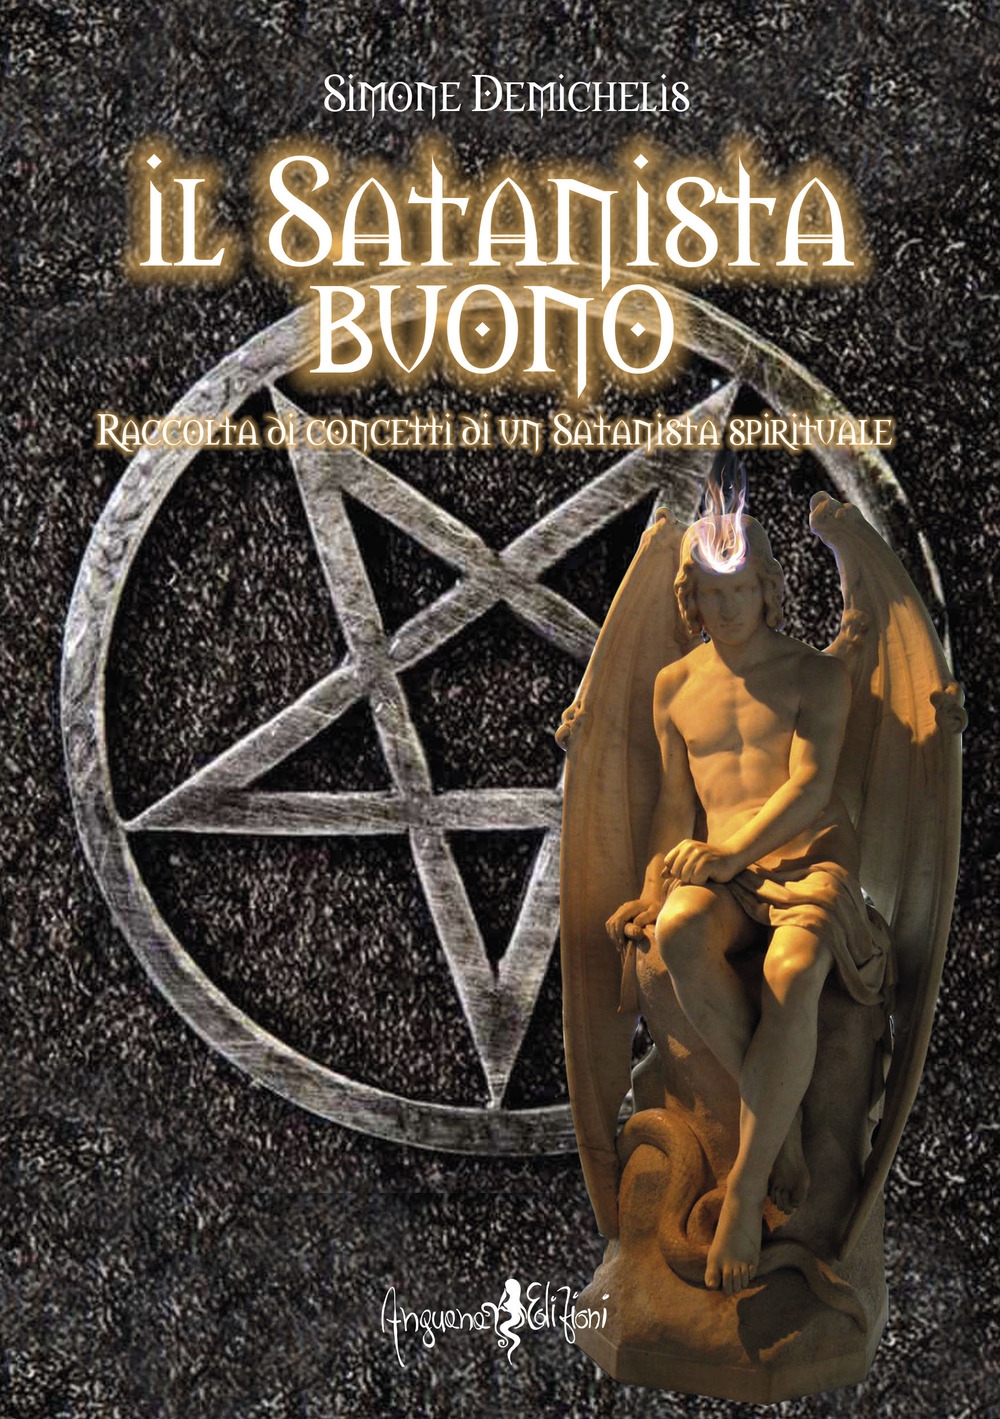 9788832130164 Demichelis Simone 2020 - Il satanista buono. Raccolta di  concetti di un Satanista spirituale 